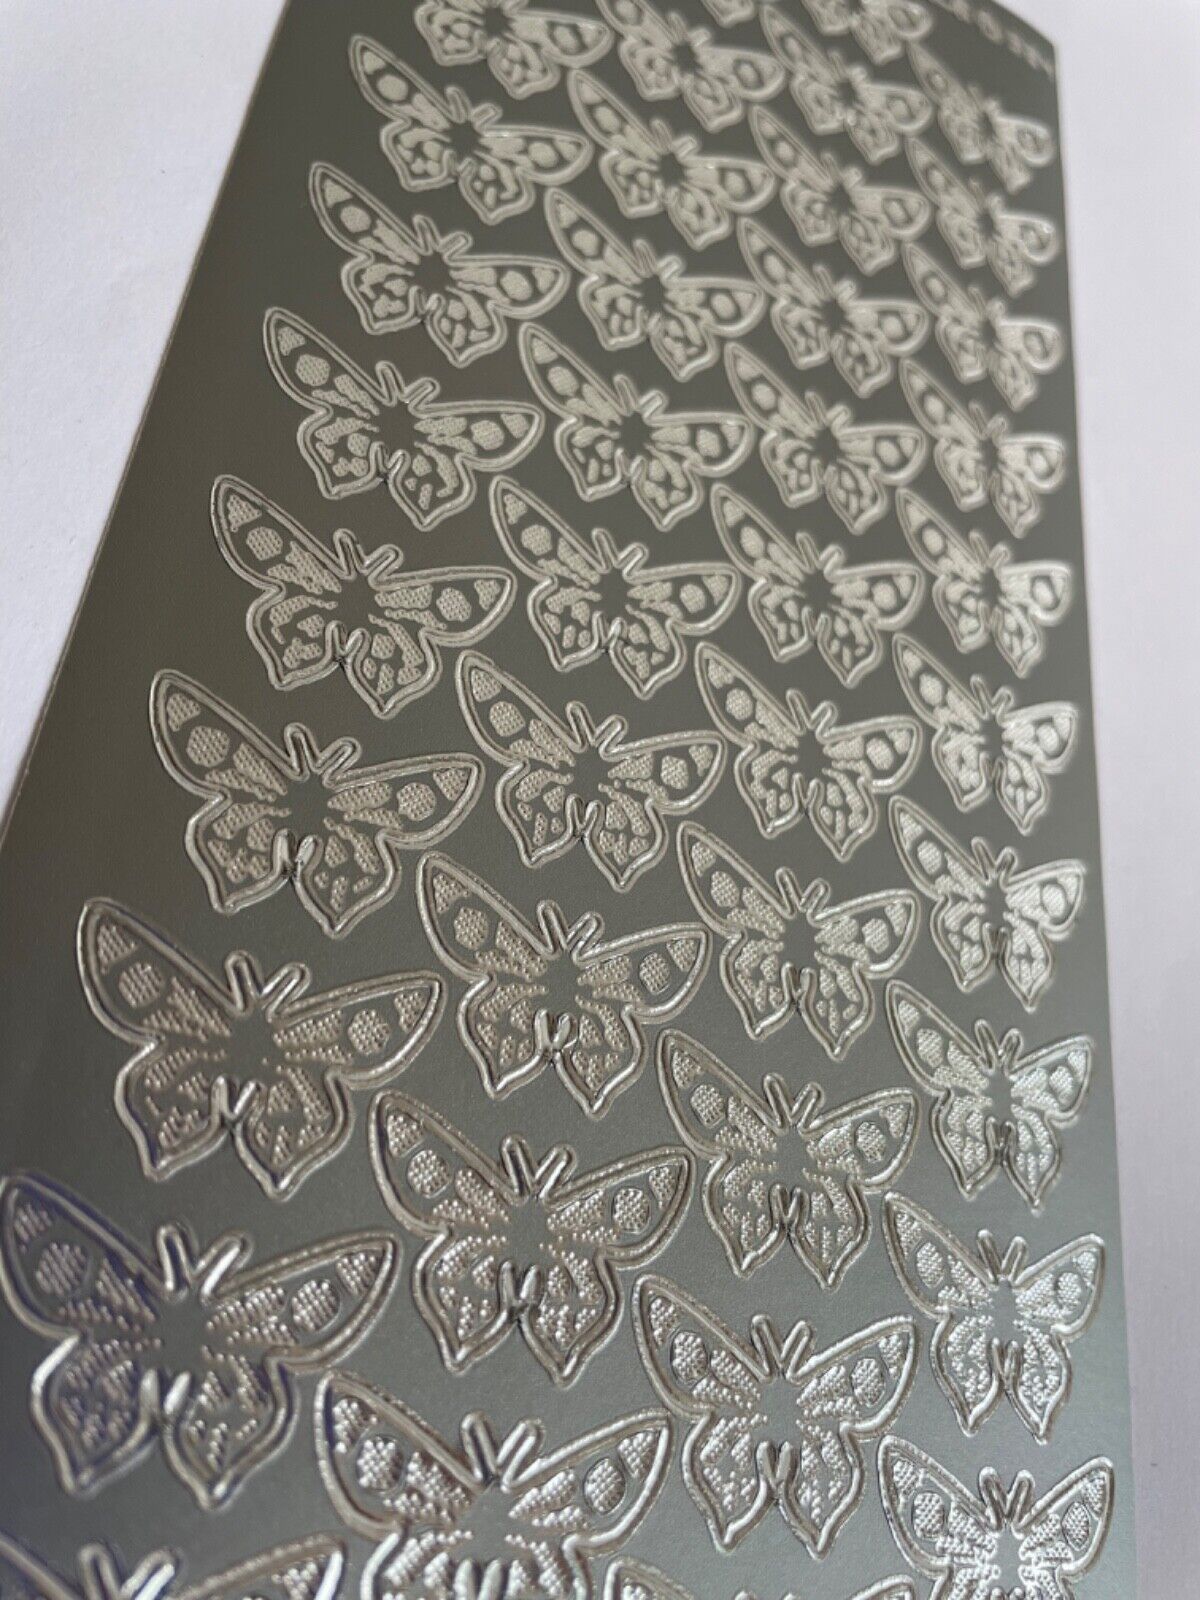 Butterfly Peel Off Sticker Sheet 44 Small Butterflies For Card Making Art Craft